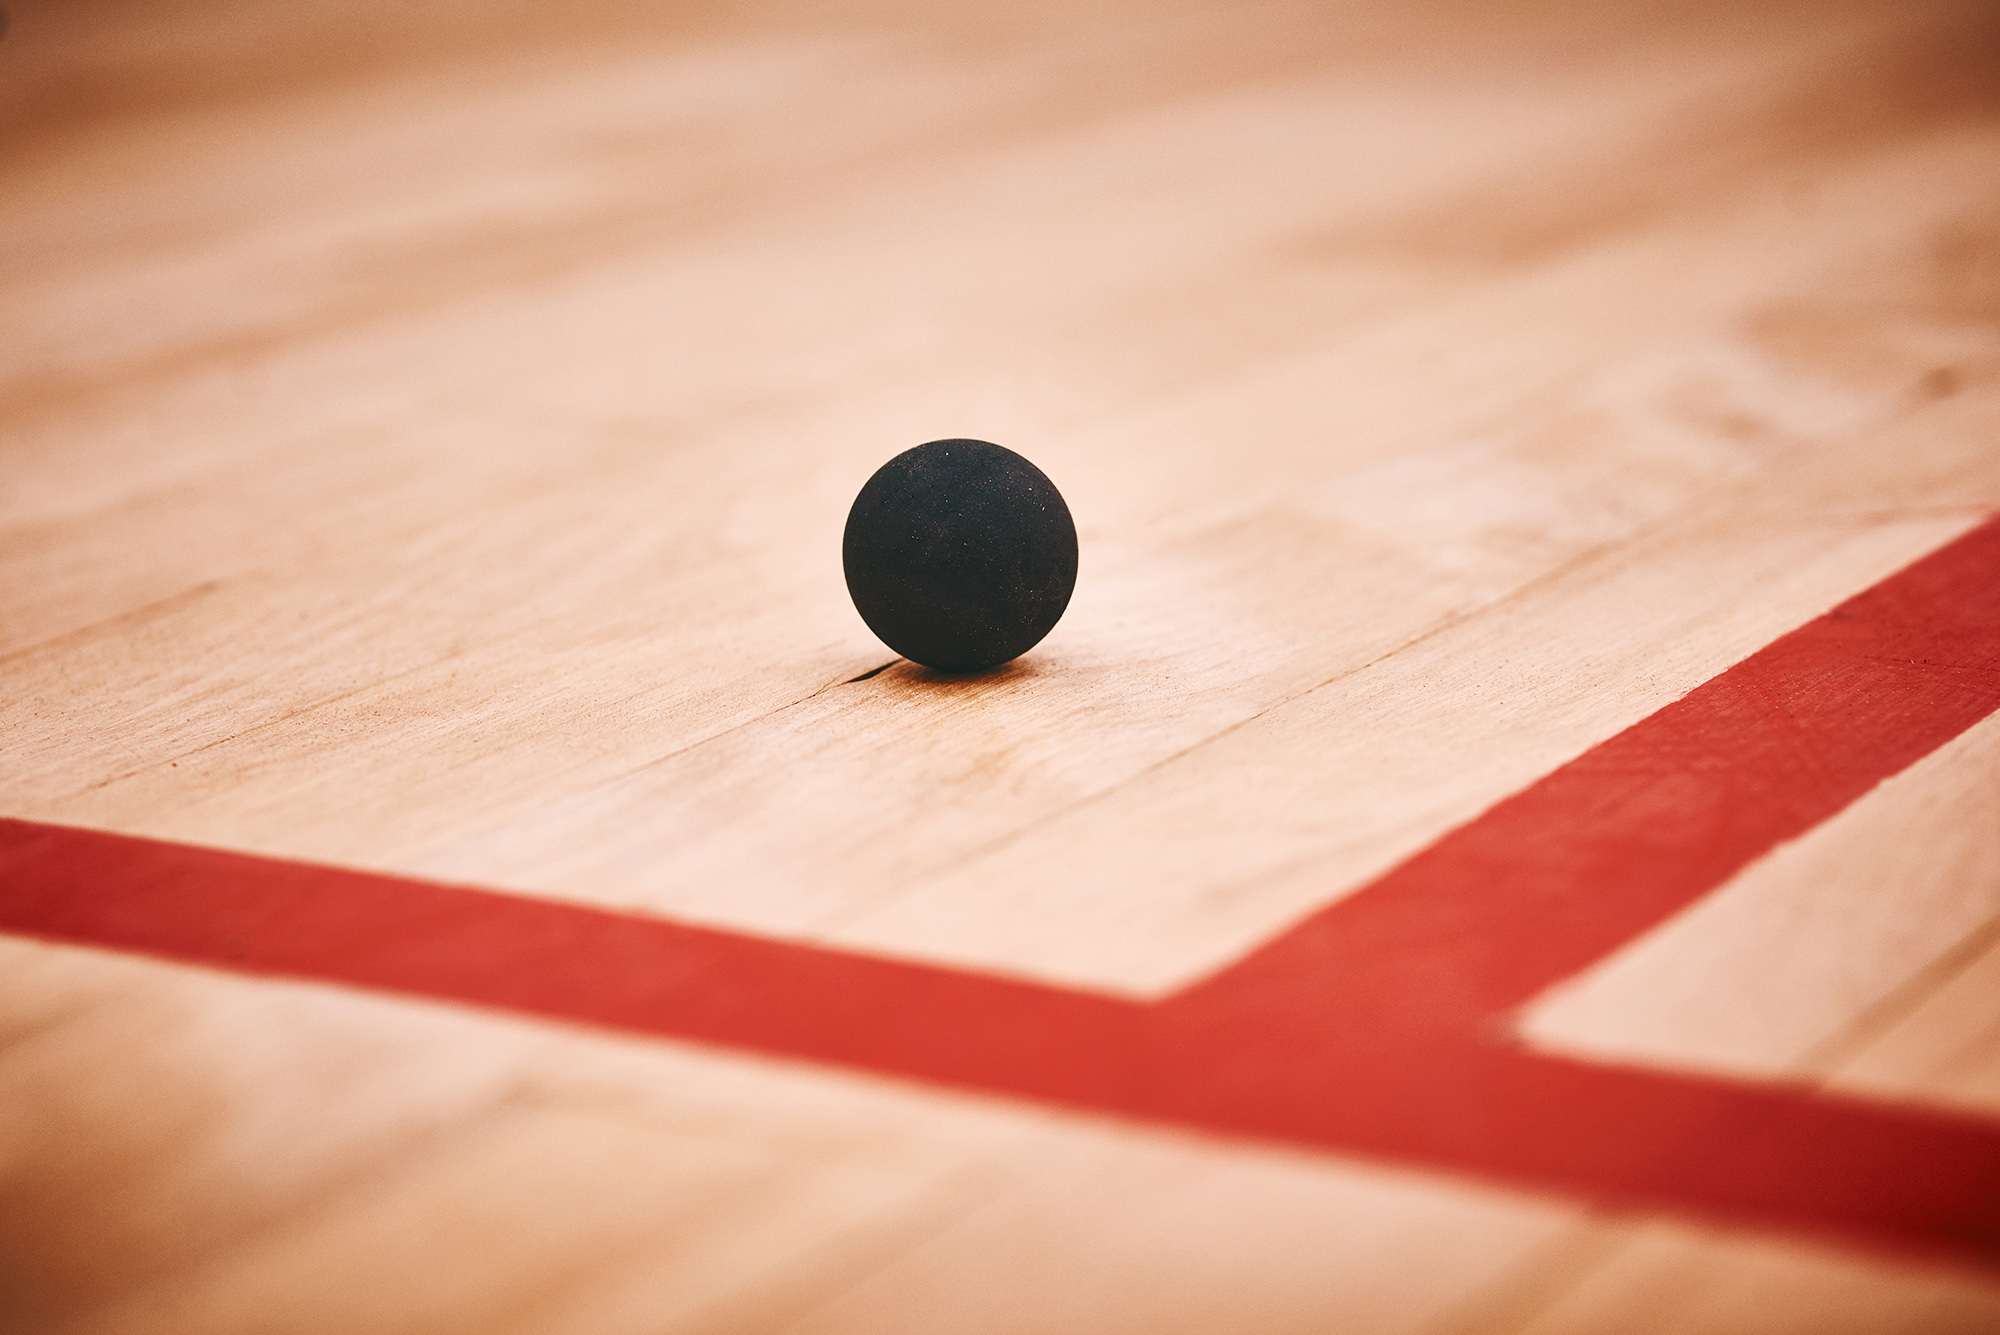 Piłki do squasha - bez nich nie ma gry